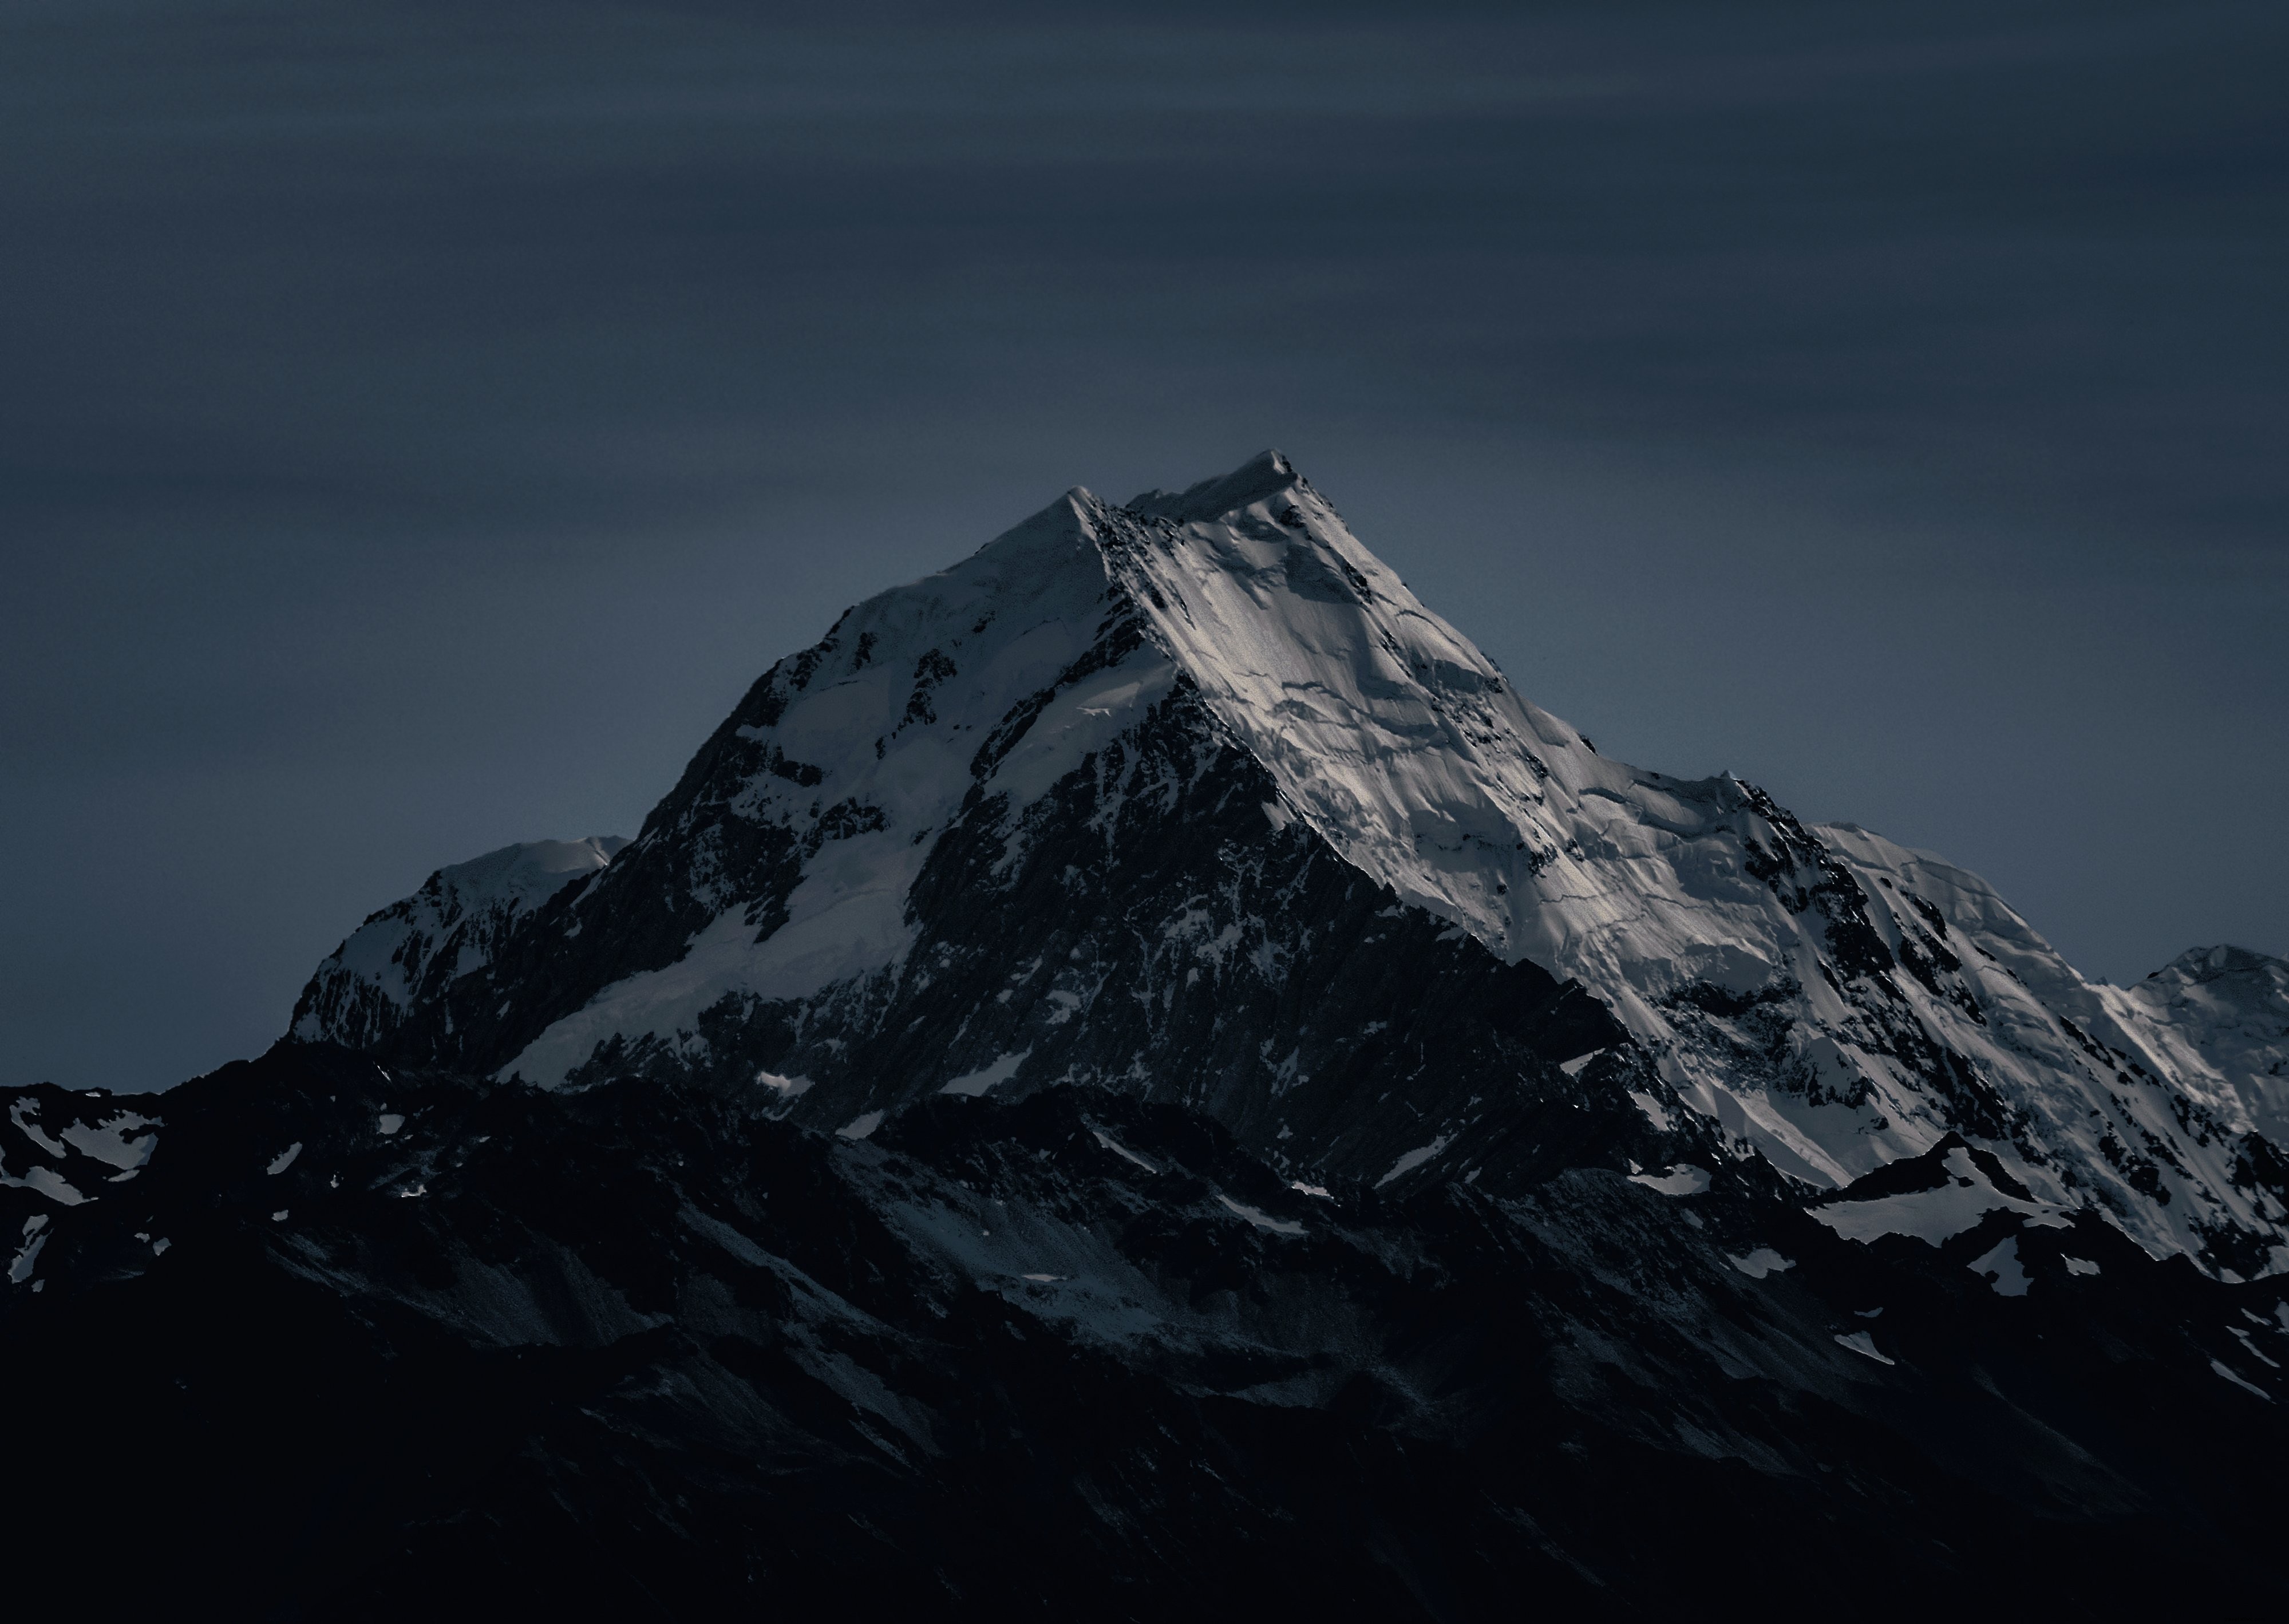 Foto do pico gelado de uma montanha em uma noite gelada